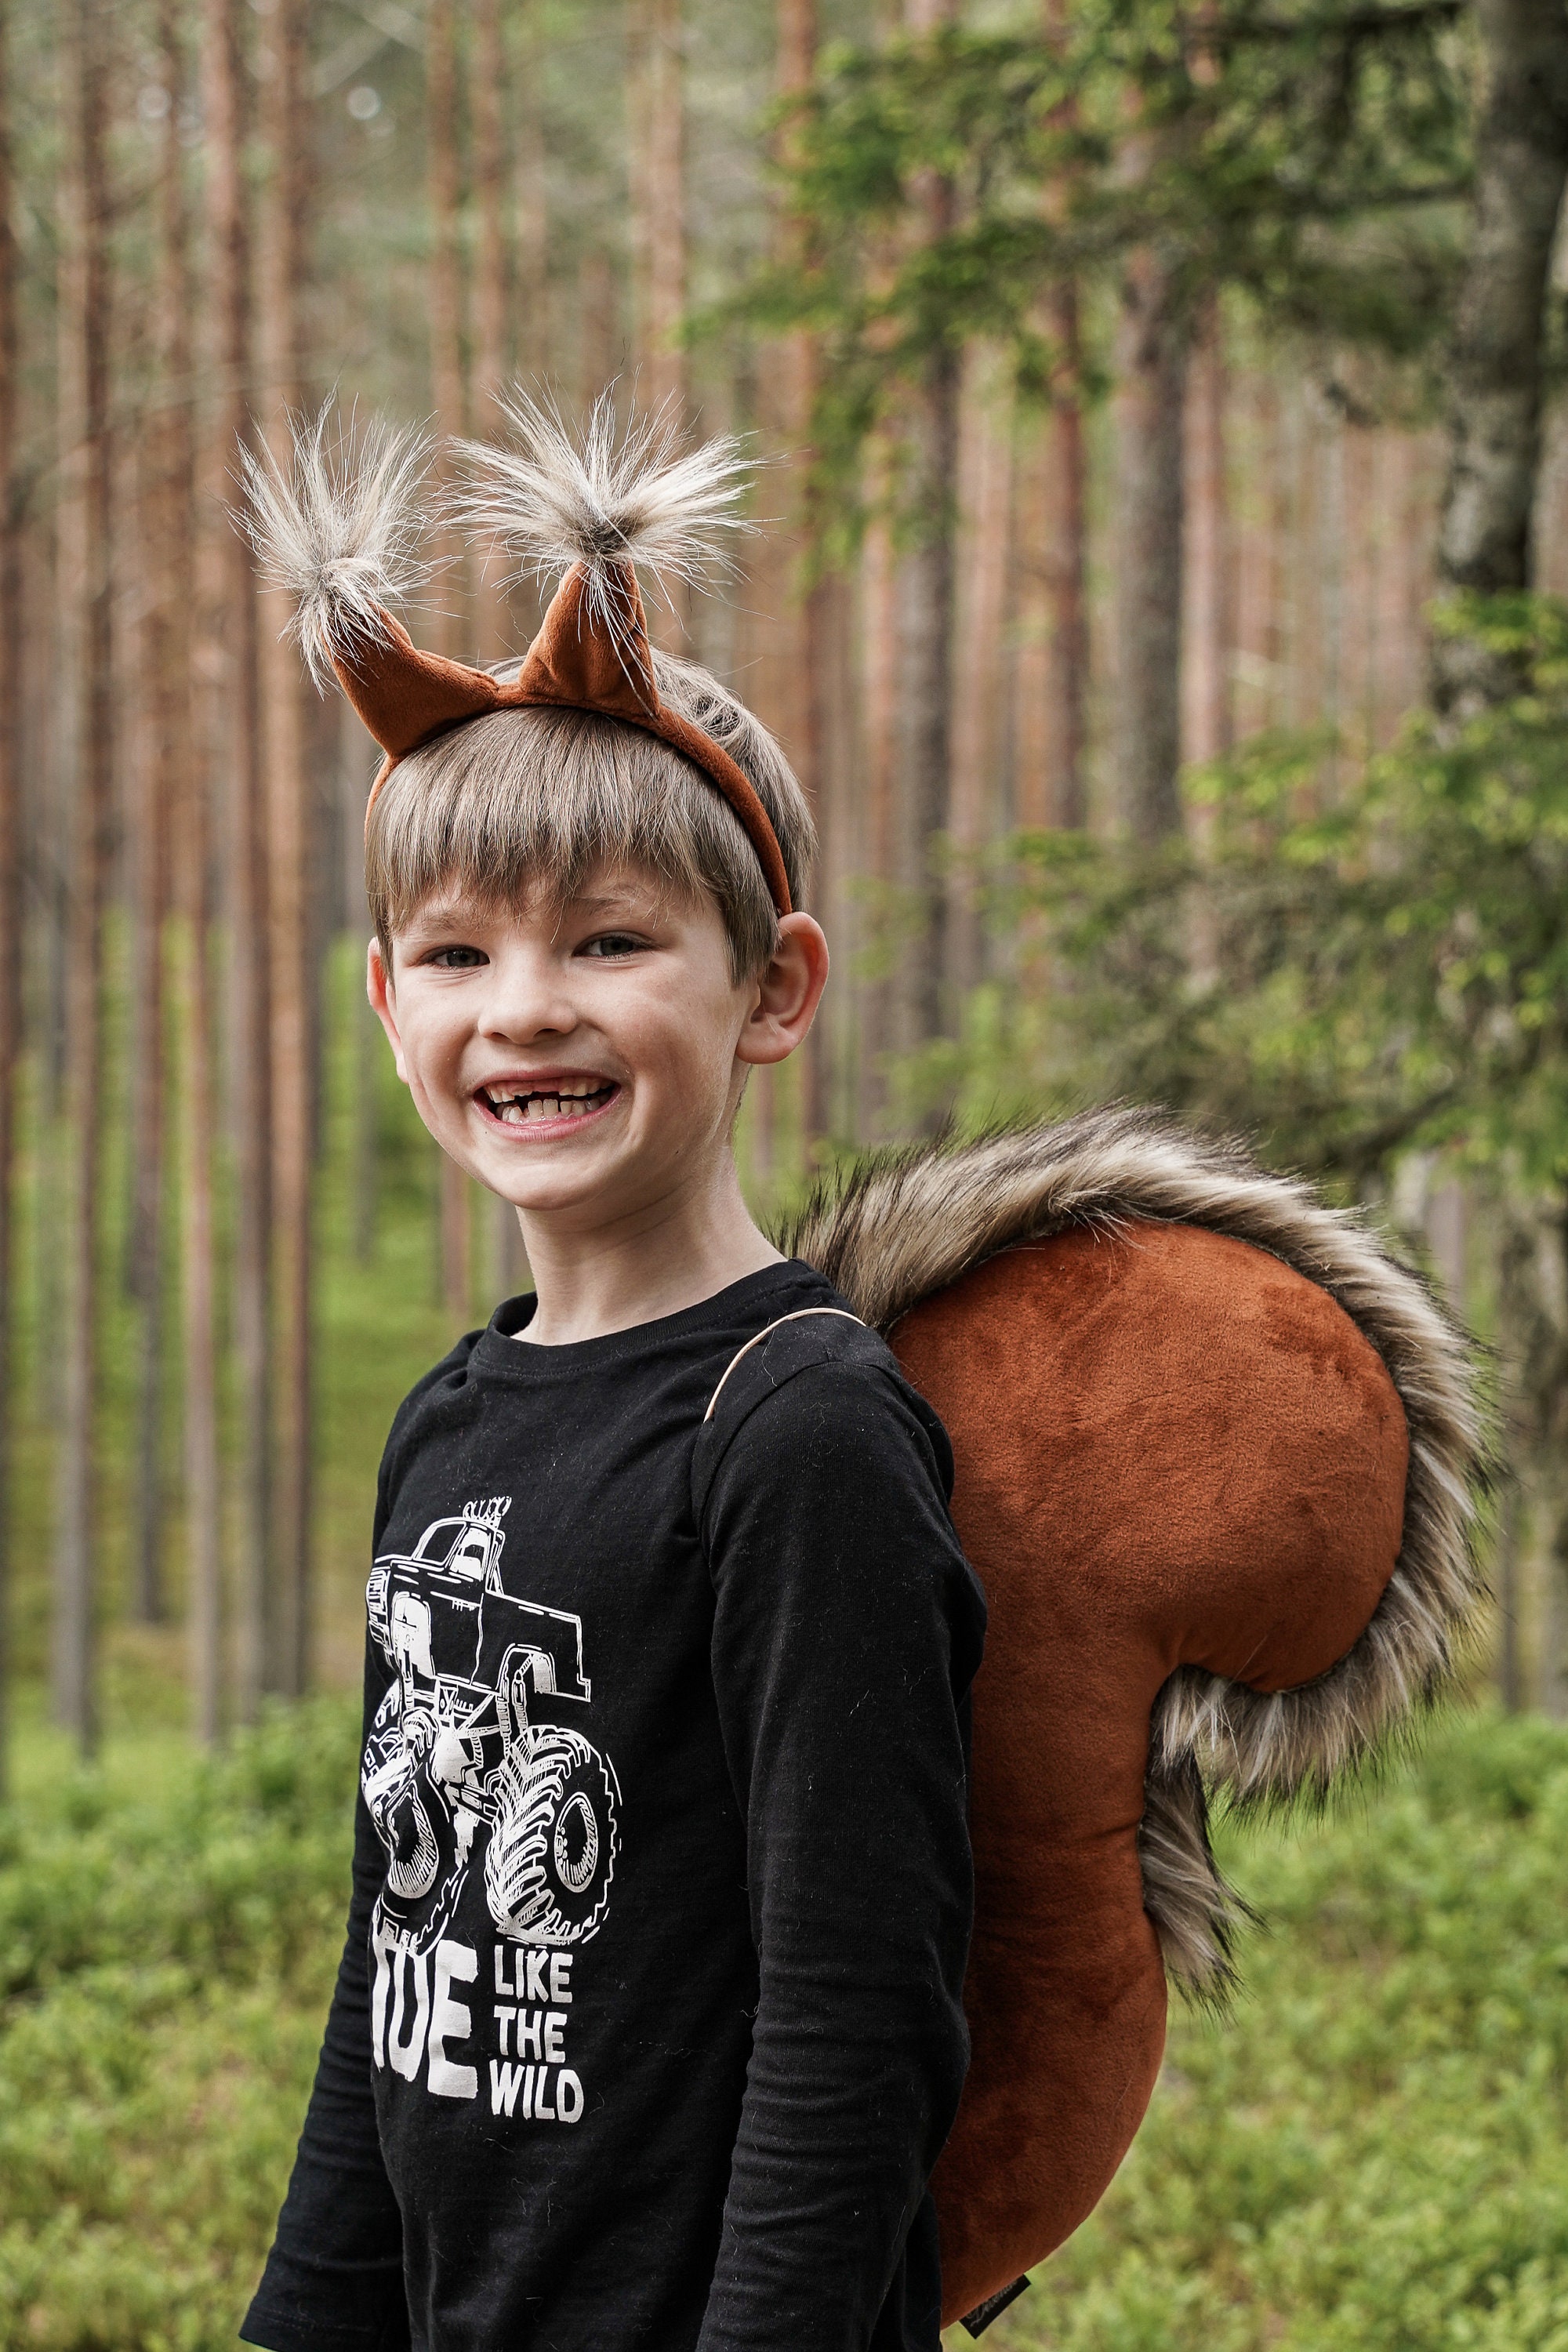 DIY déguisement : réaliser un serre-tête écureuil pour enfant - Marie Claire